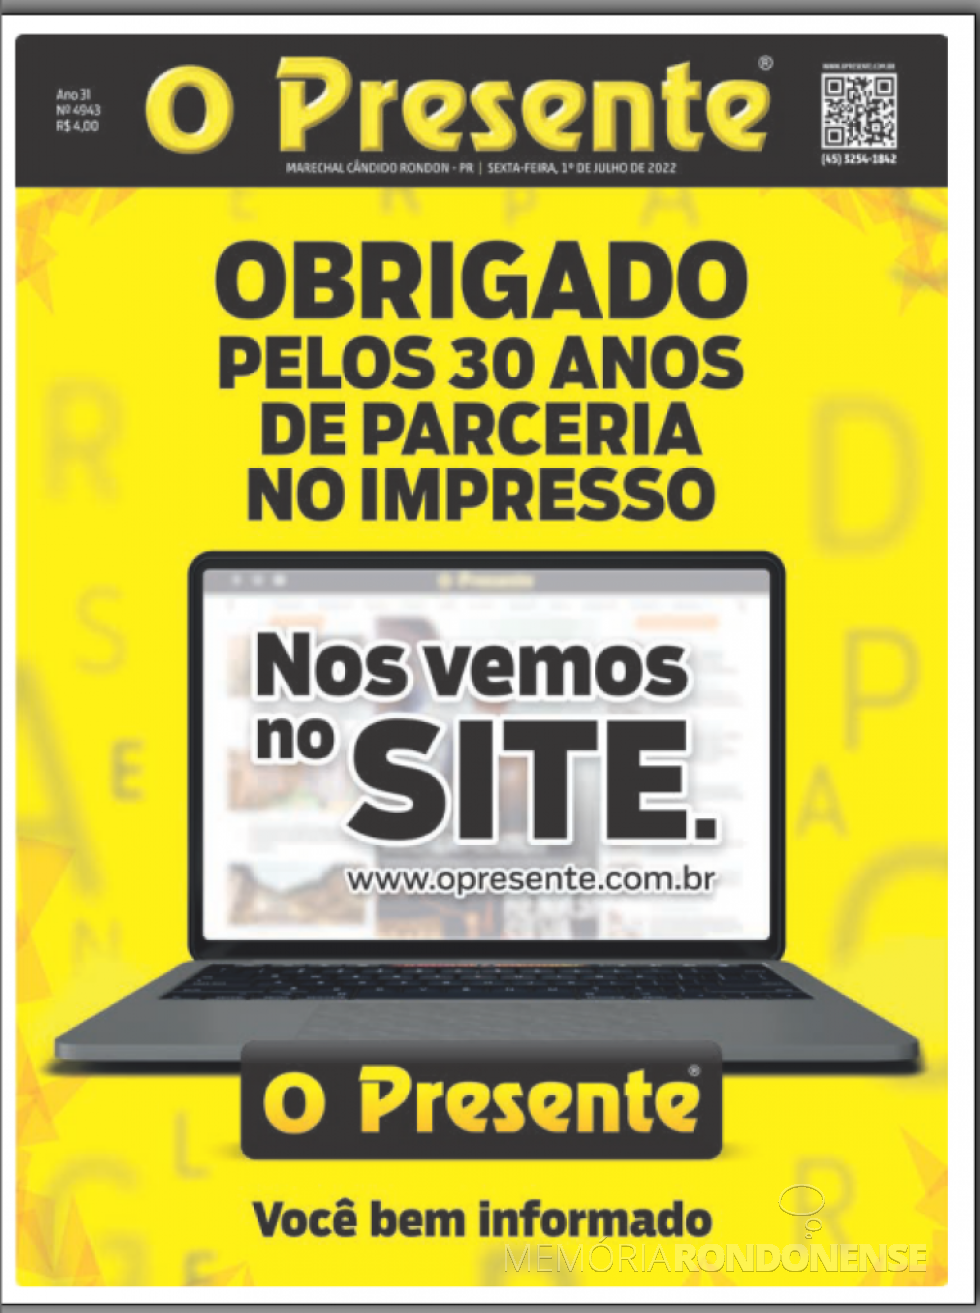 Capa da última versão impressa do jornal O Presente, em 01 de julho de 2022.
Imagem: Acervo do informativo - FOTO 19 - 